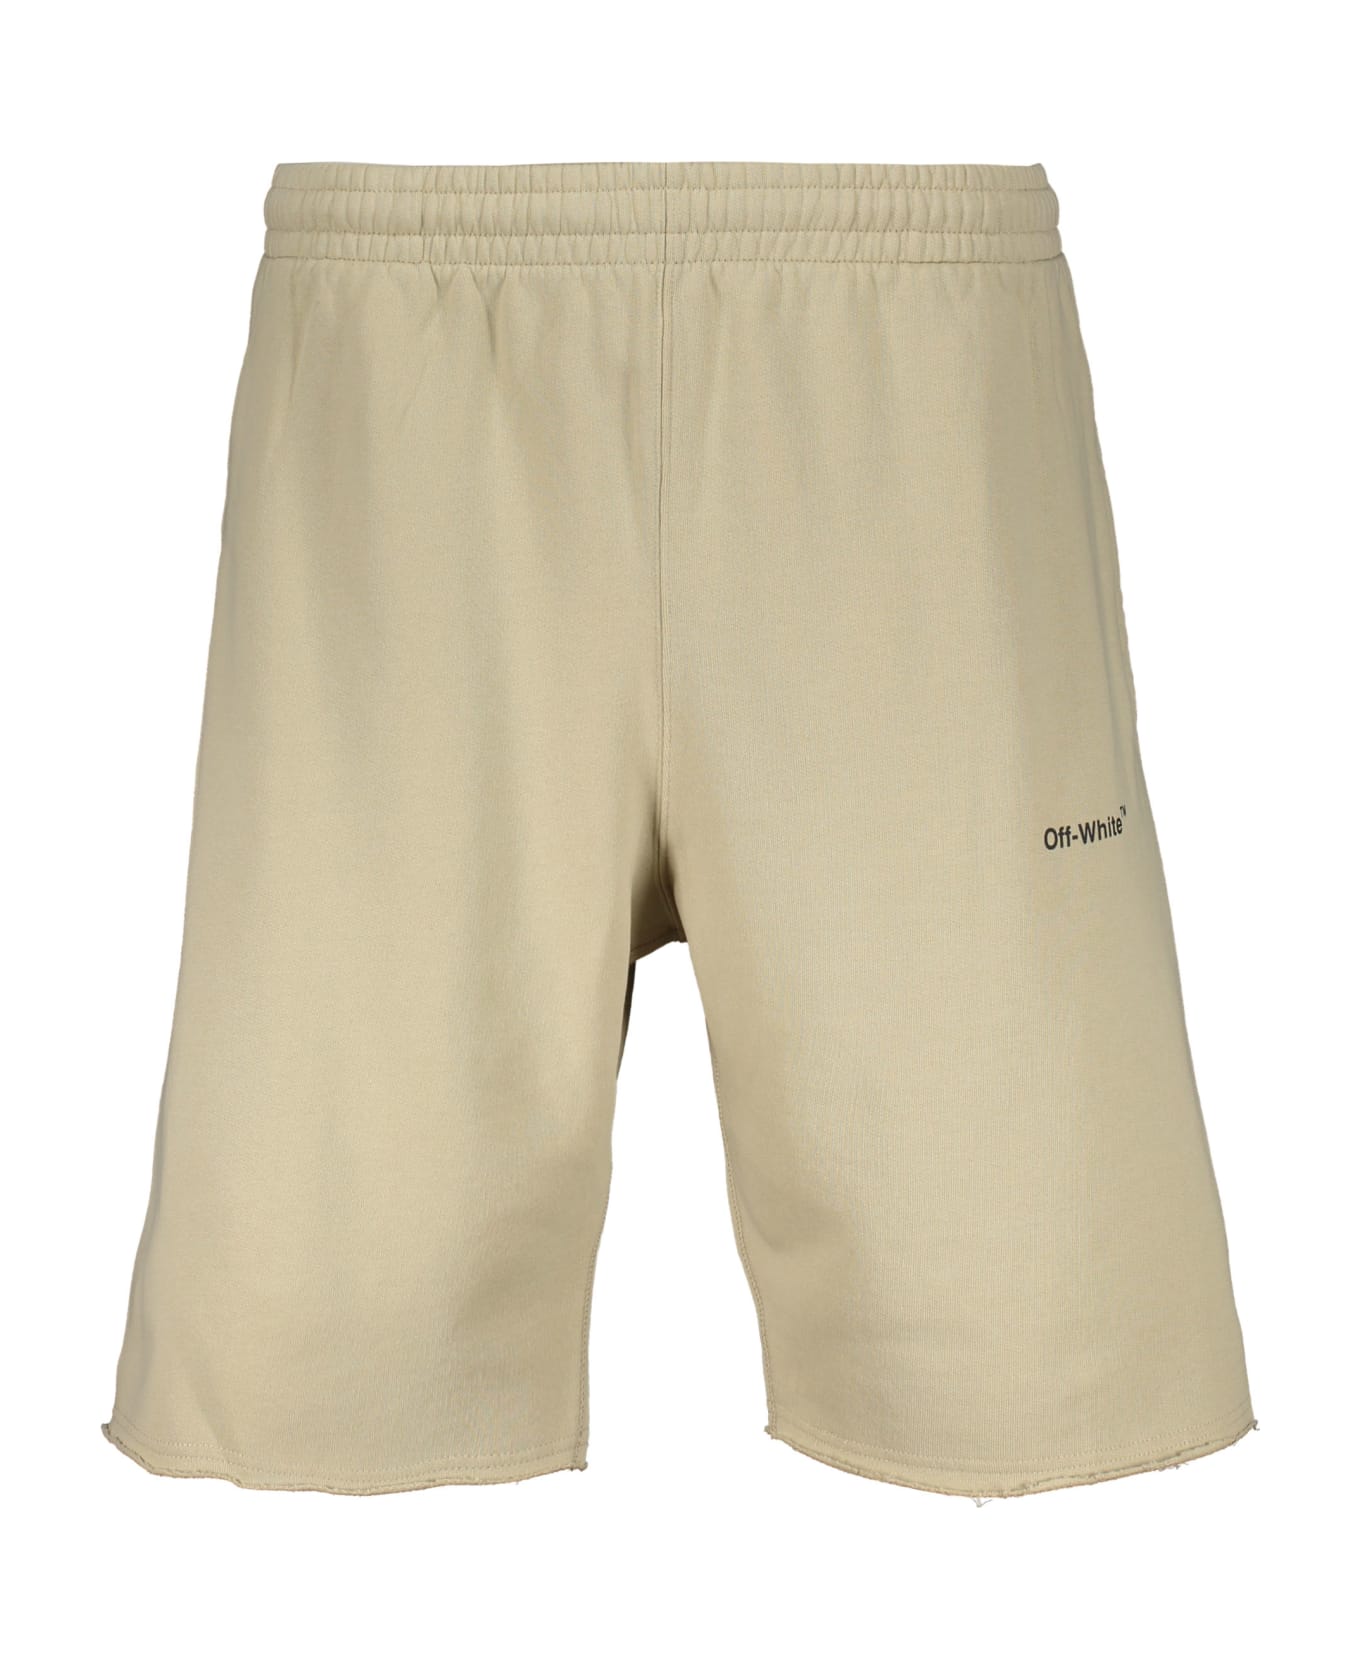 Off-White Cotton Bermuda Shorts - Beige